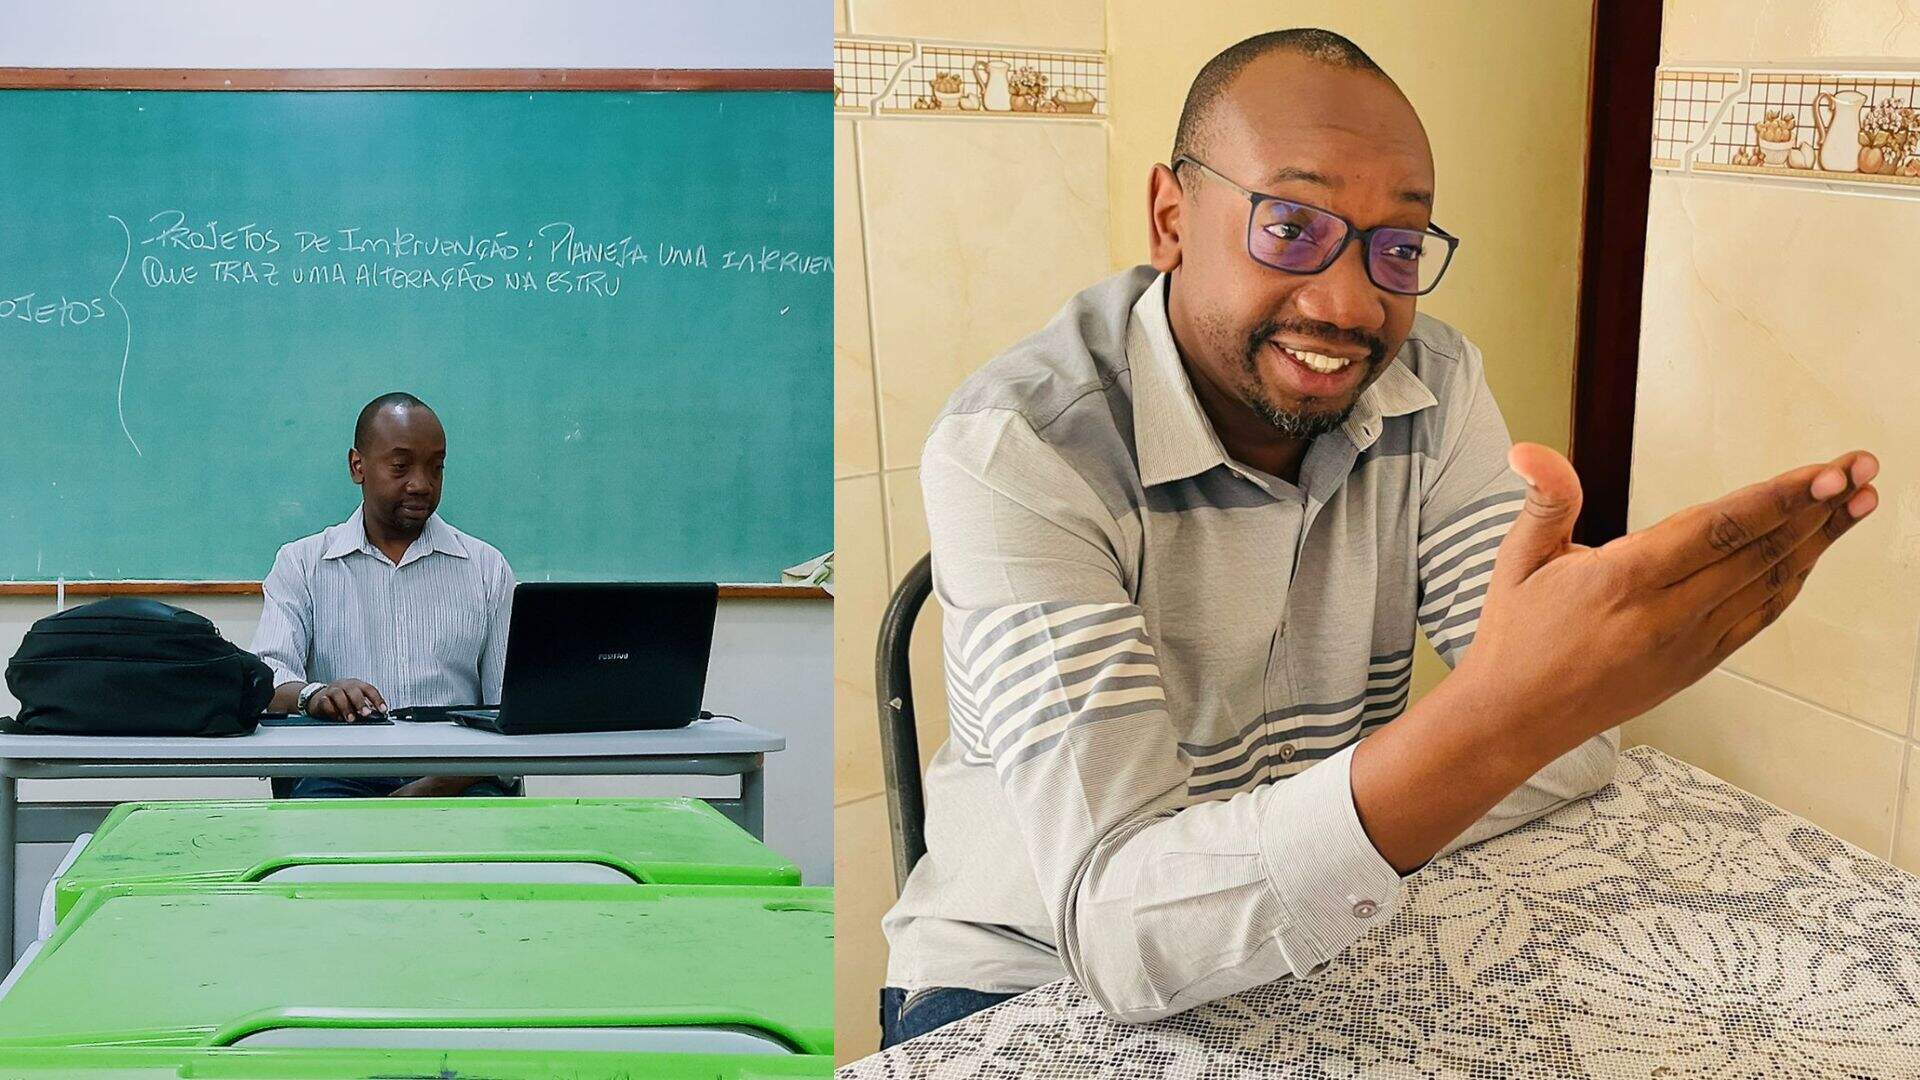 Após 28 anos, professor volta para dar aulas na mesma escola onde estudou: ‘Turbilhão de emoções’